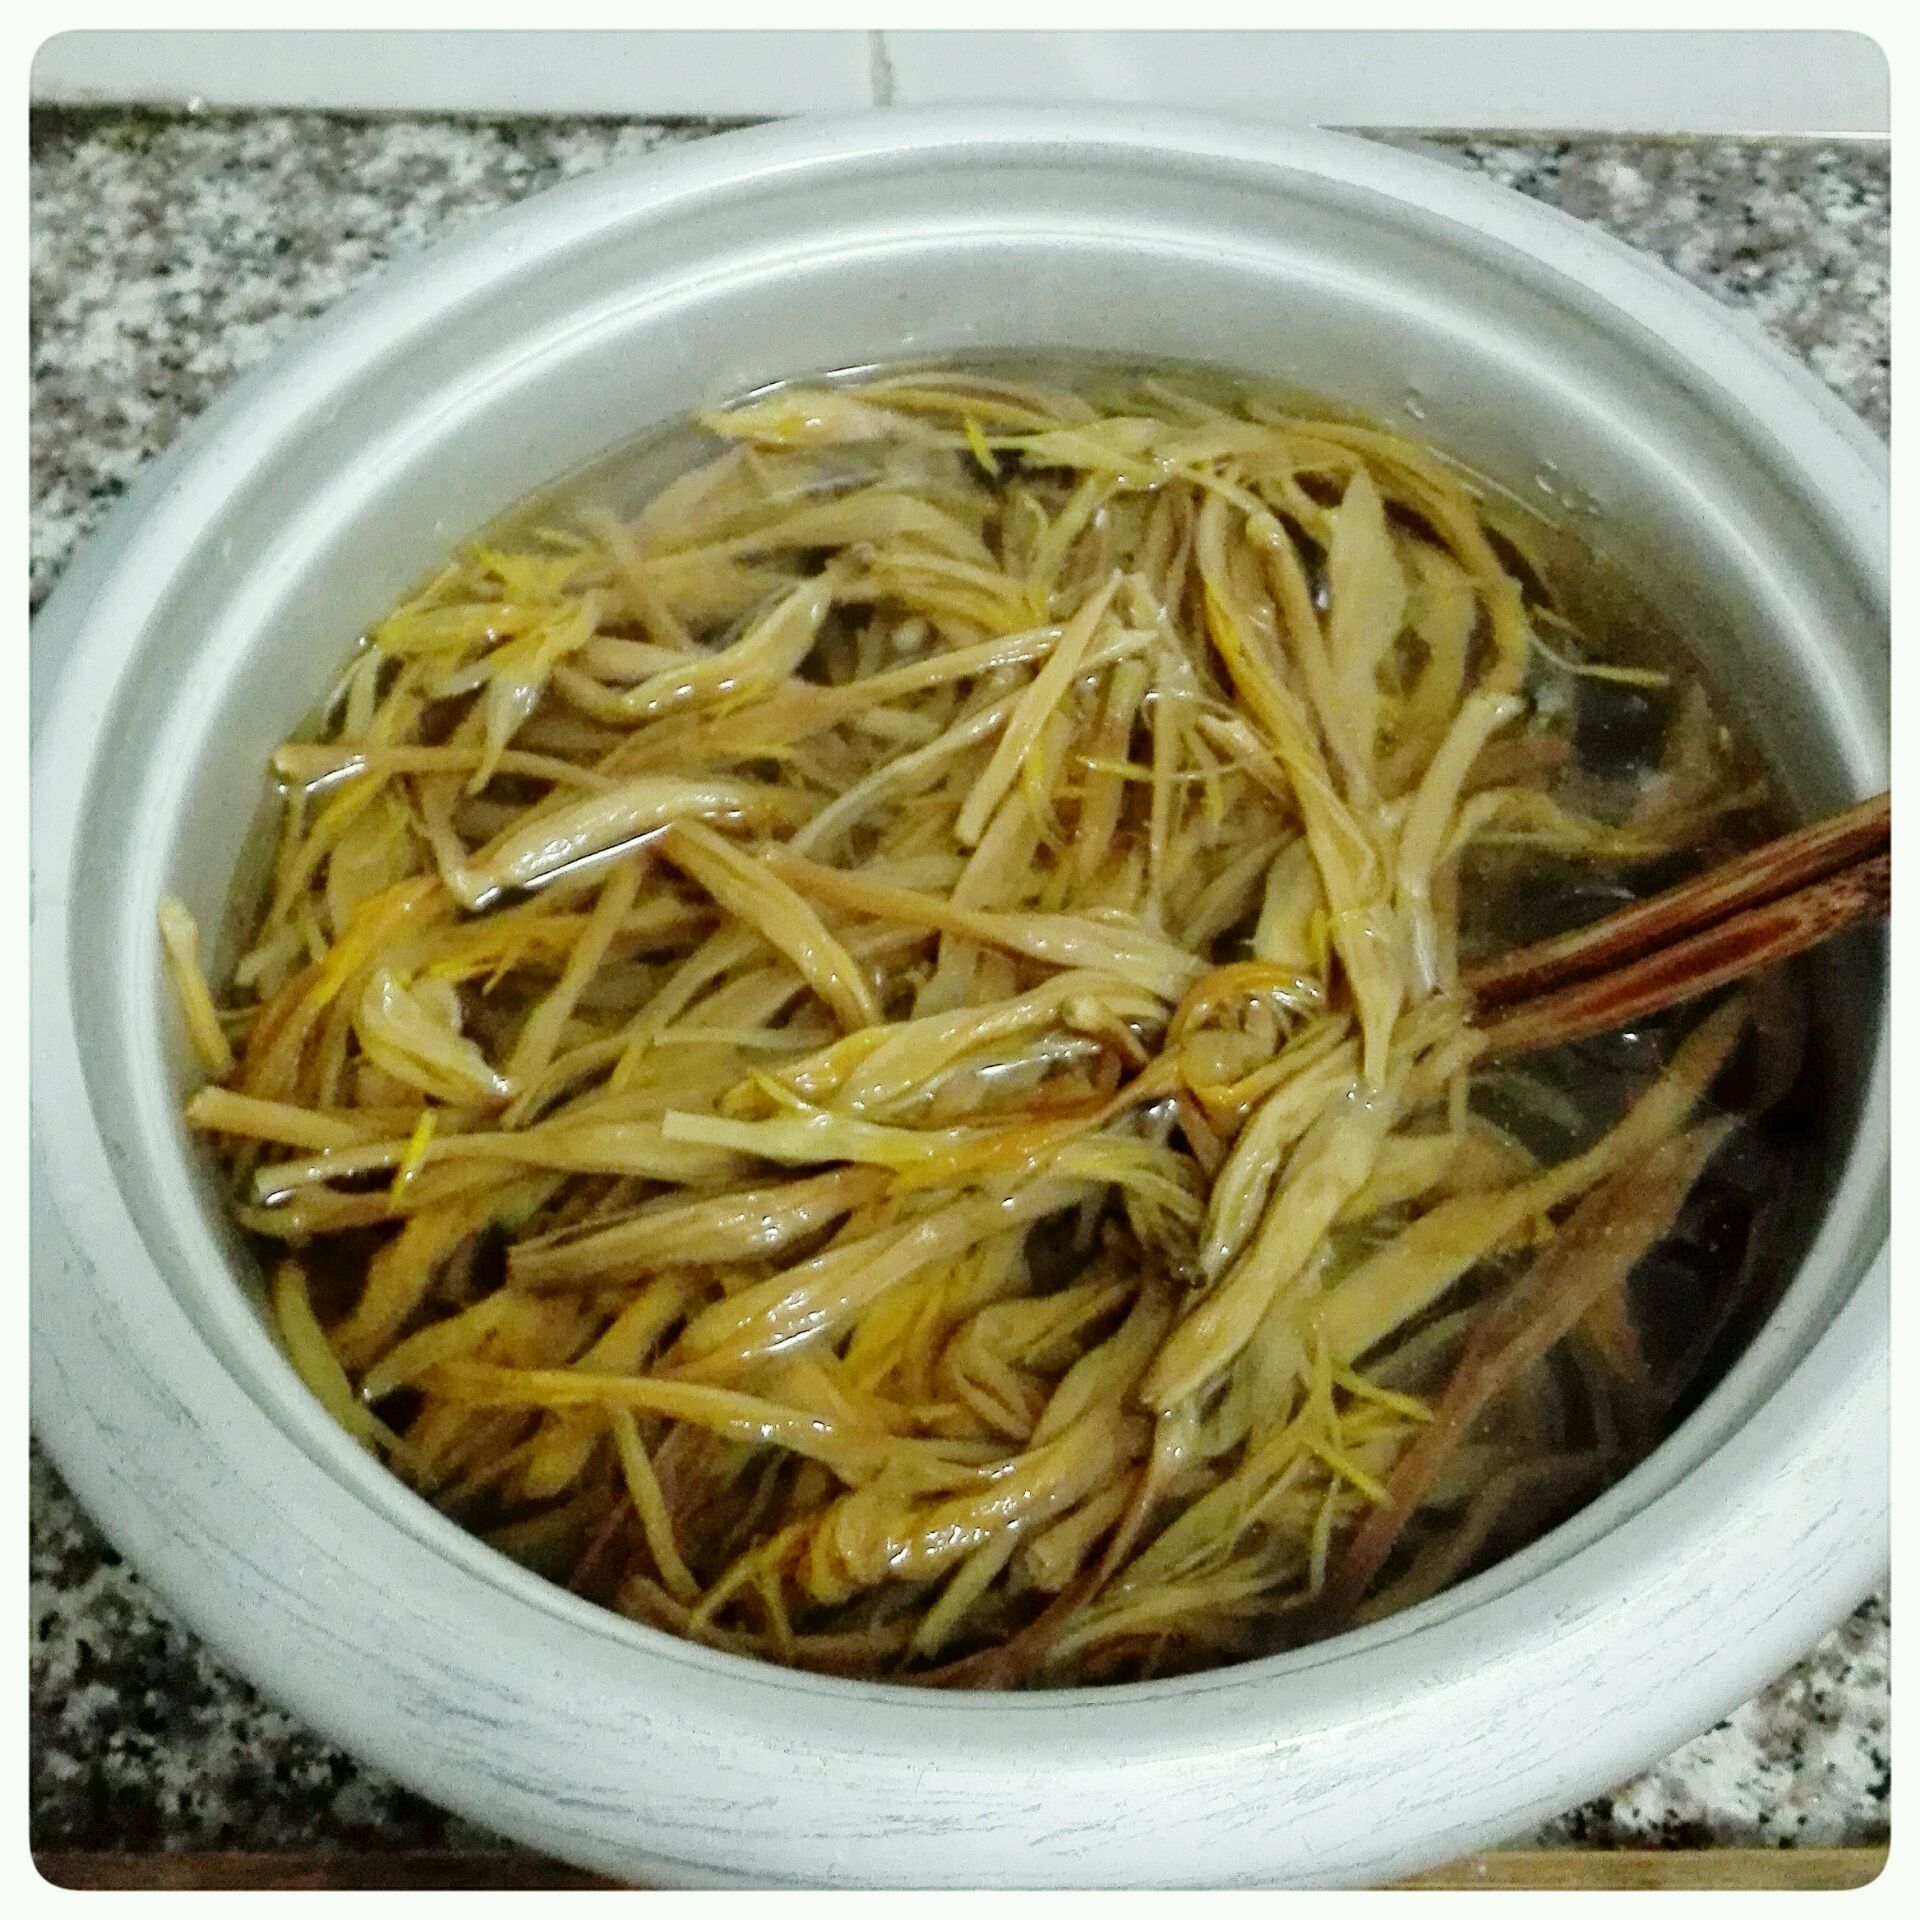 黄花菜豆腐汤|夏长|知养录|Enaiter伊莱特官网-中国食养电器